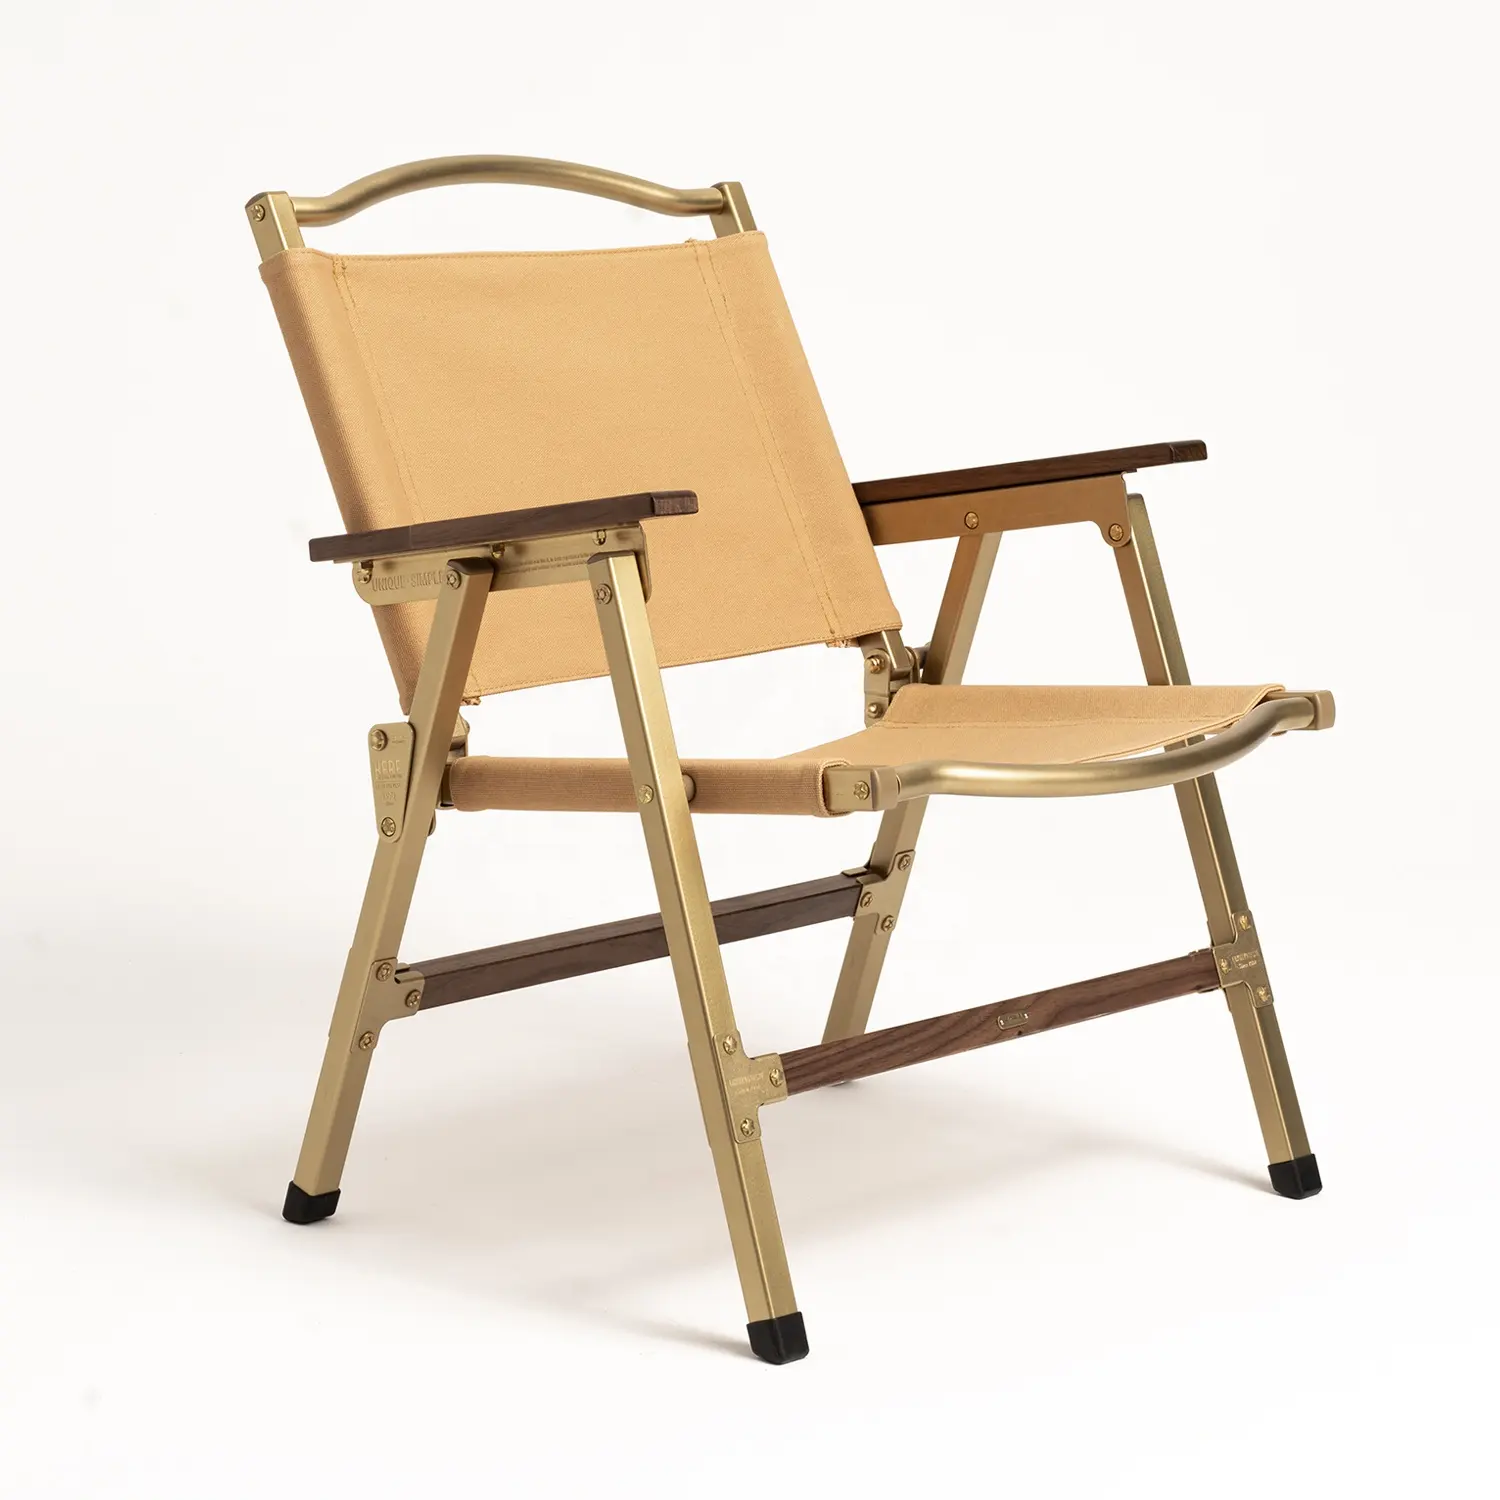 JIFENG mobilier d'extérieur en bois de noyer noir et cuivre, chaise pliante d'intérieur et d'extérieur facile à transporter